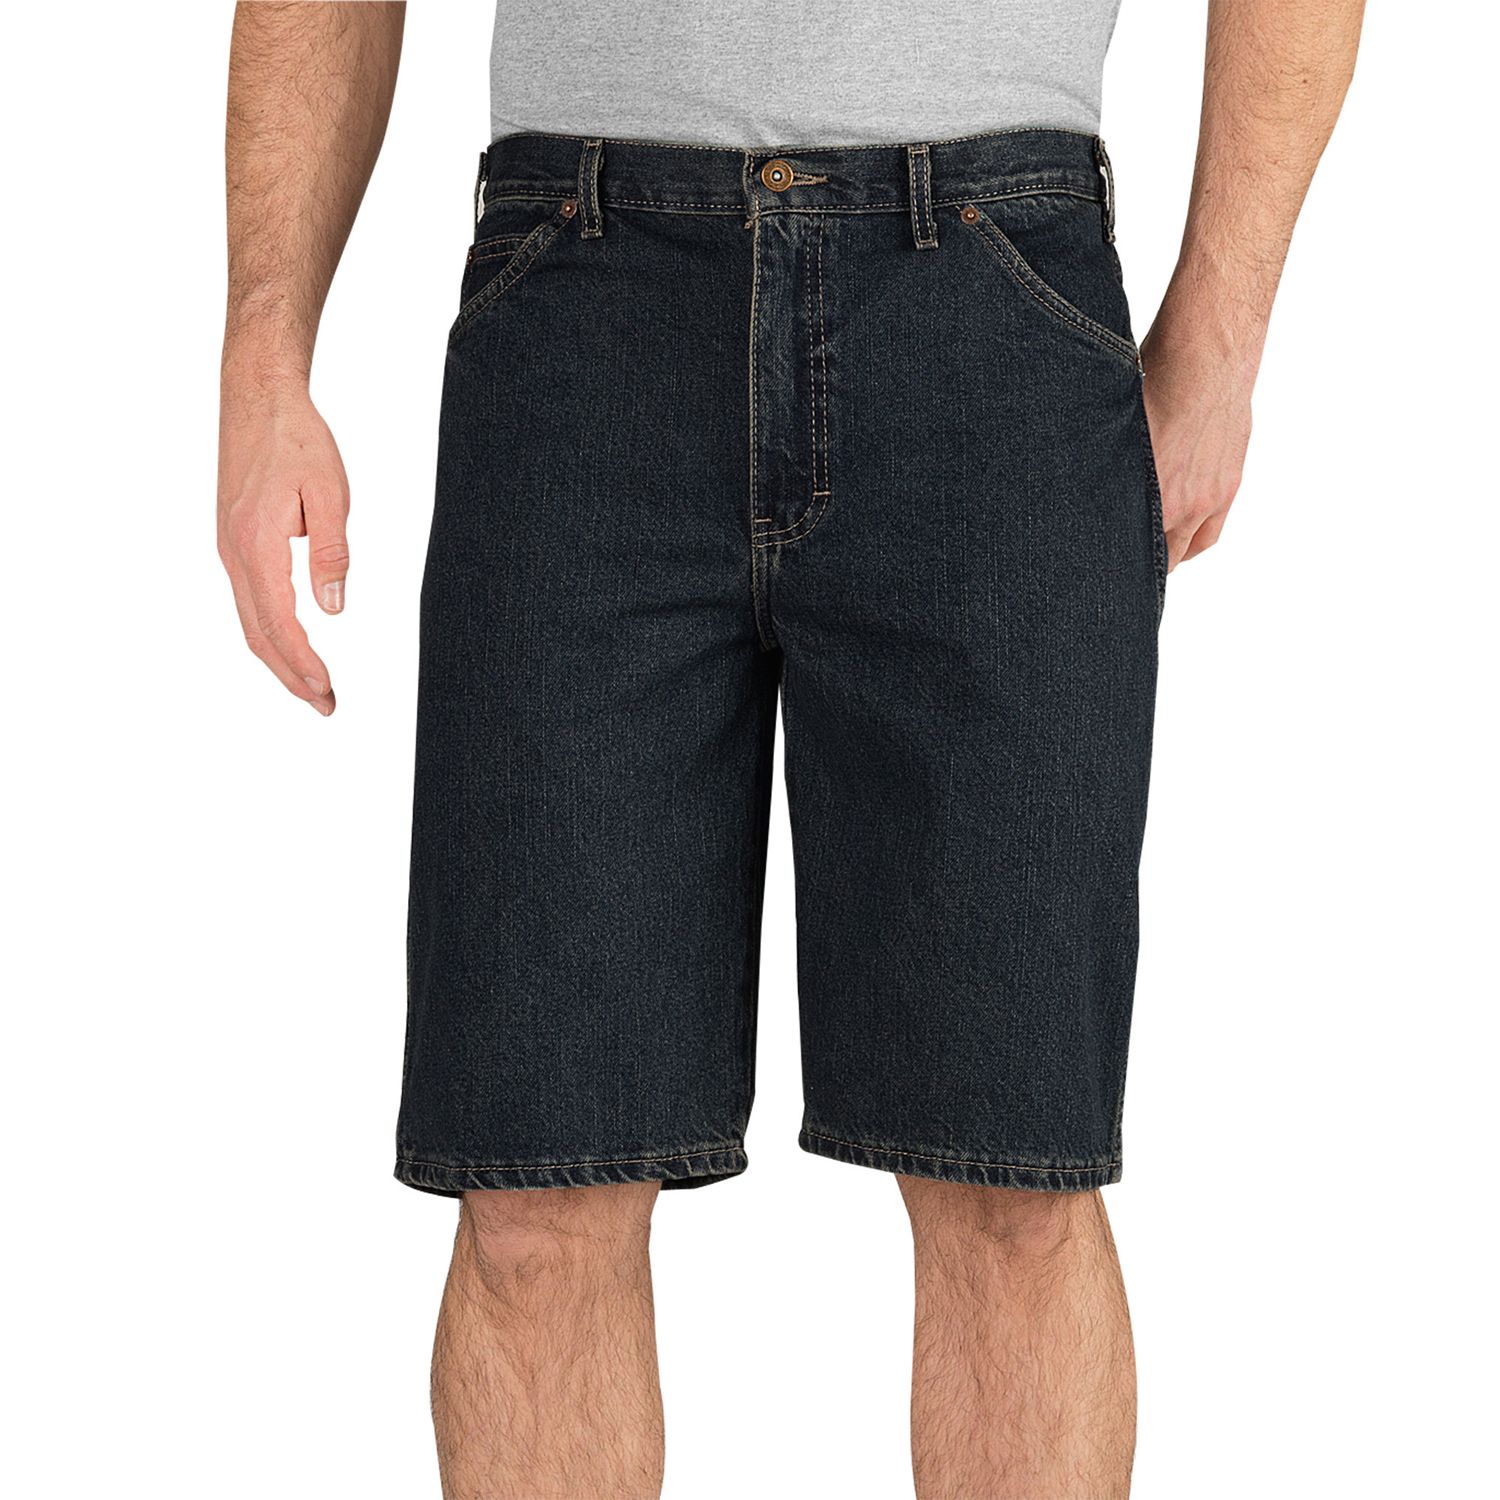 khaki denim shorts